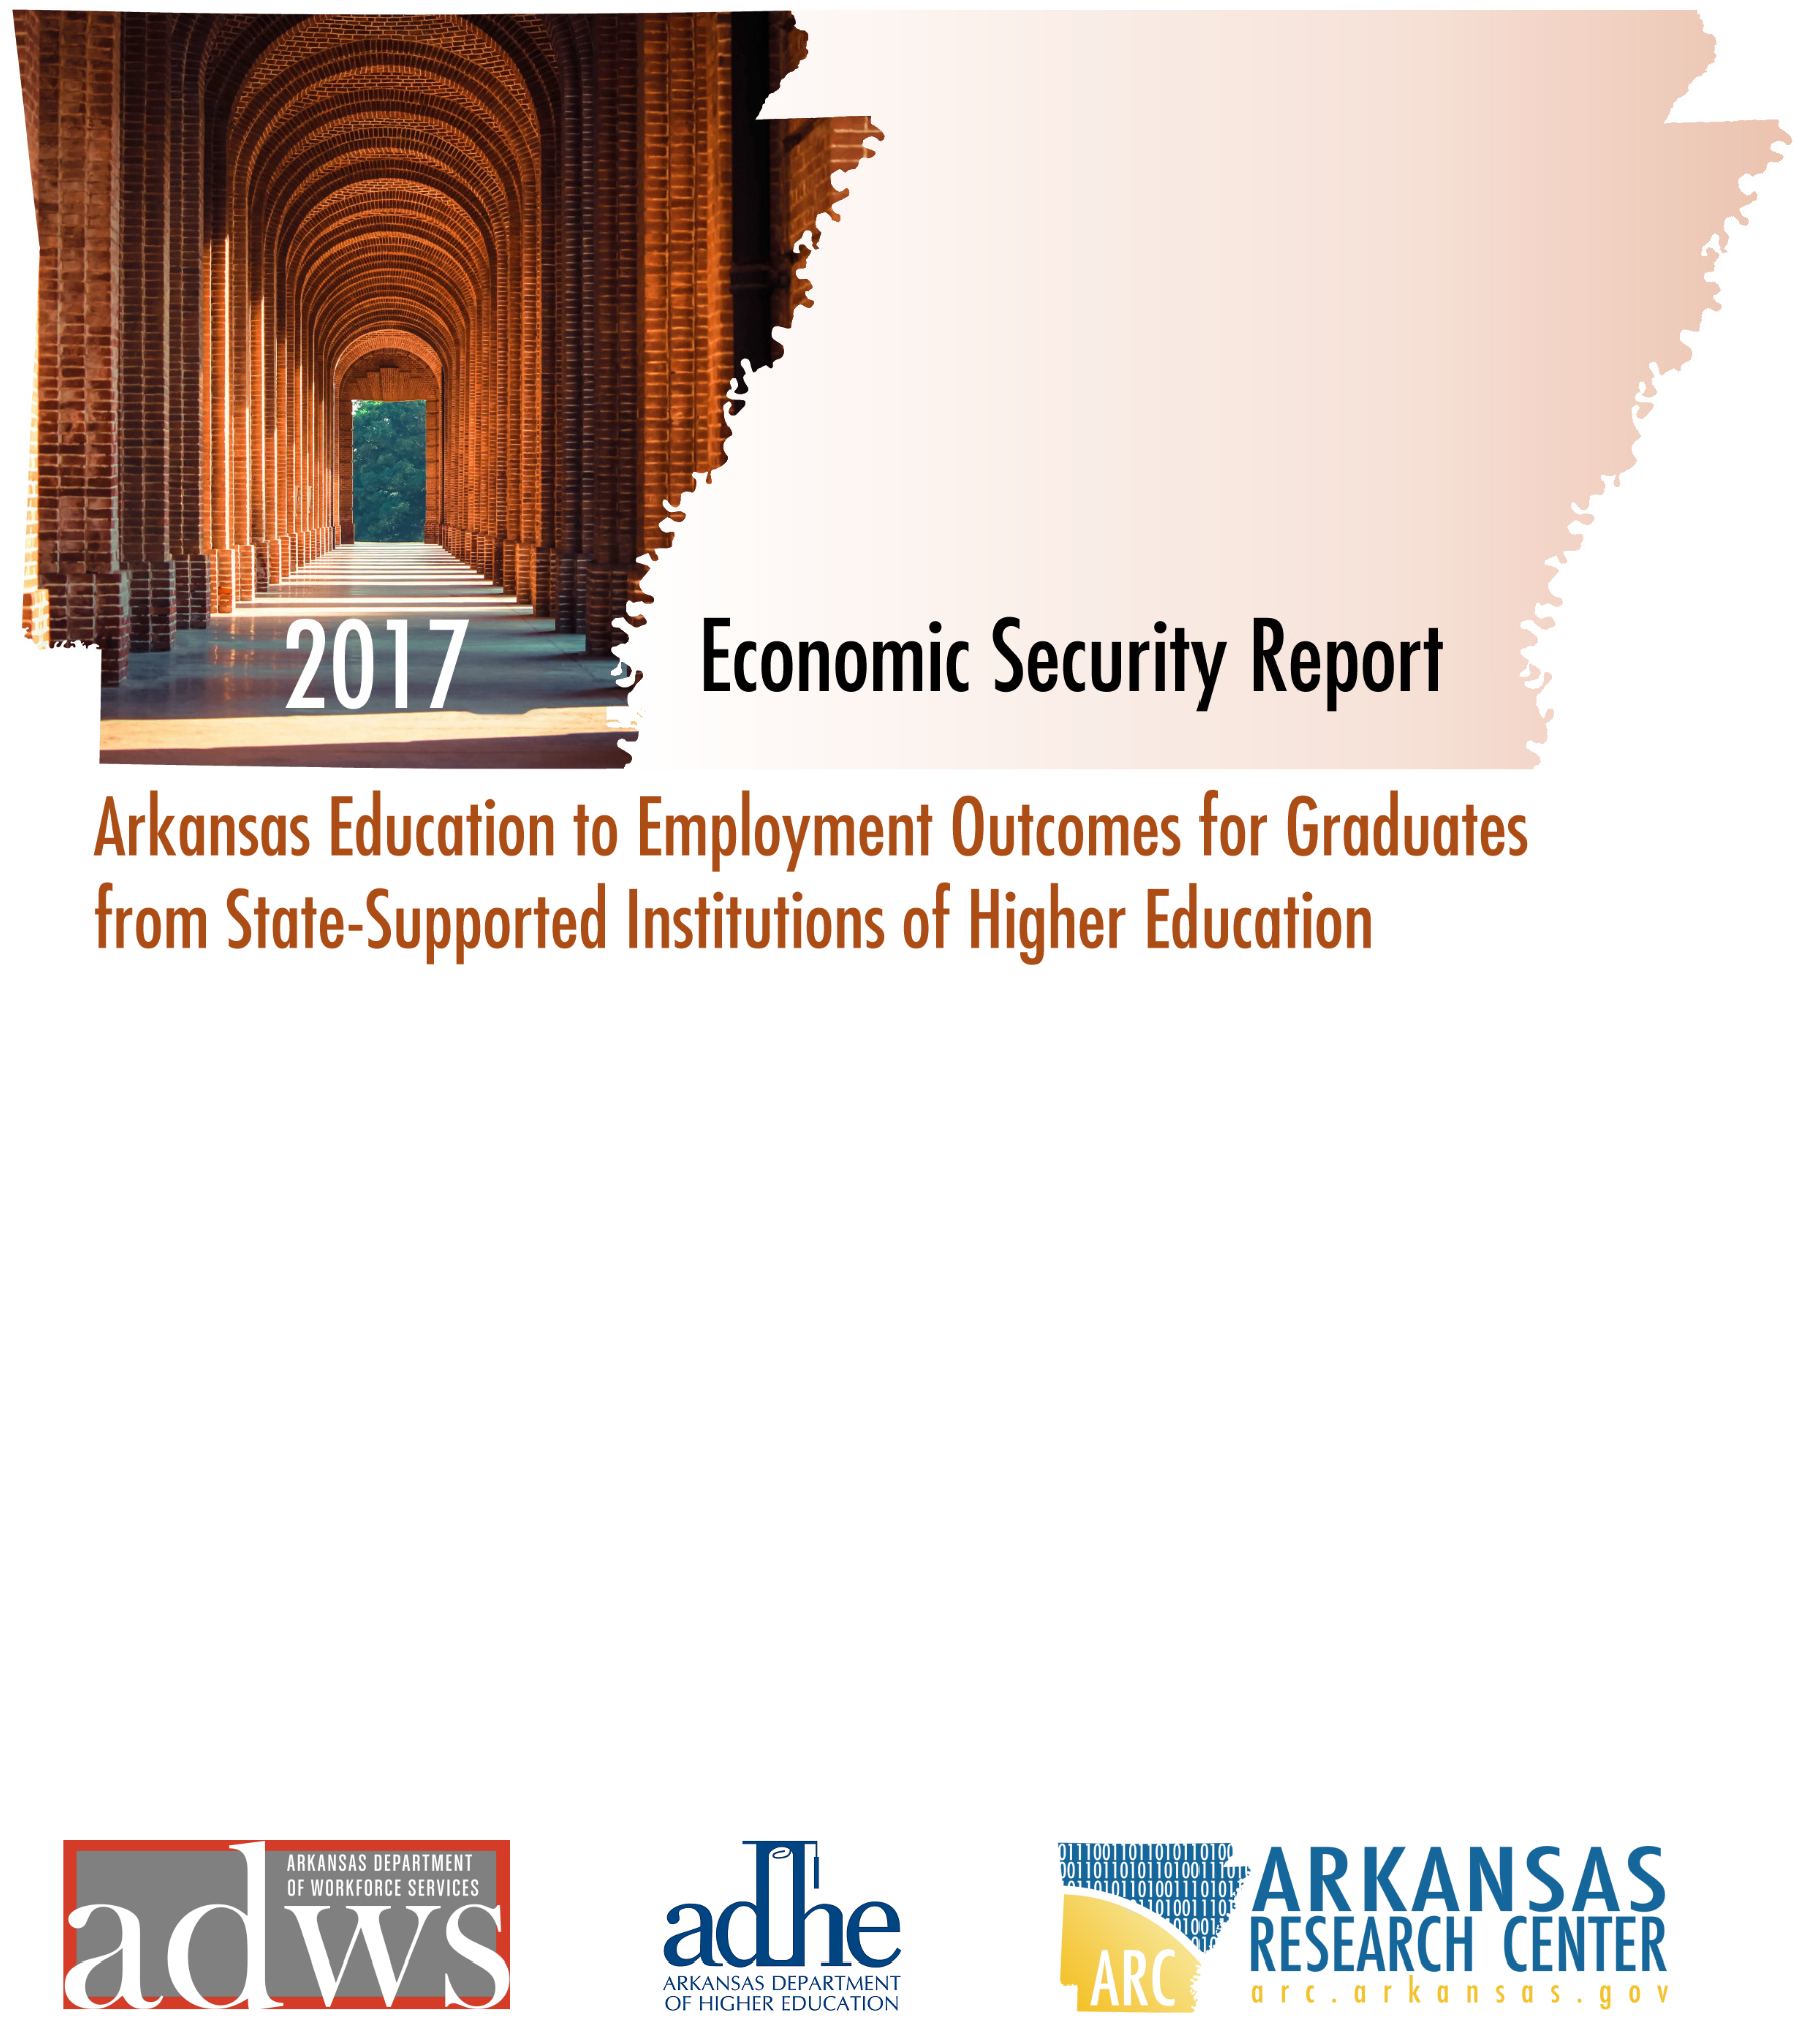 Economic Security Report (2017) summary